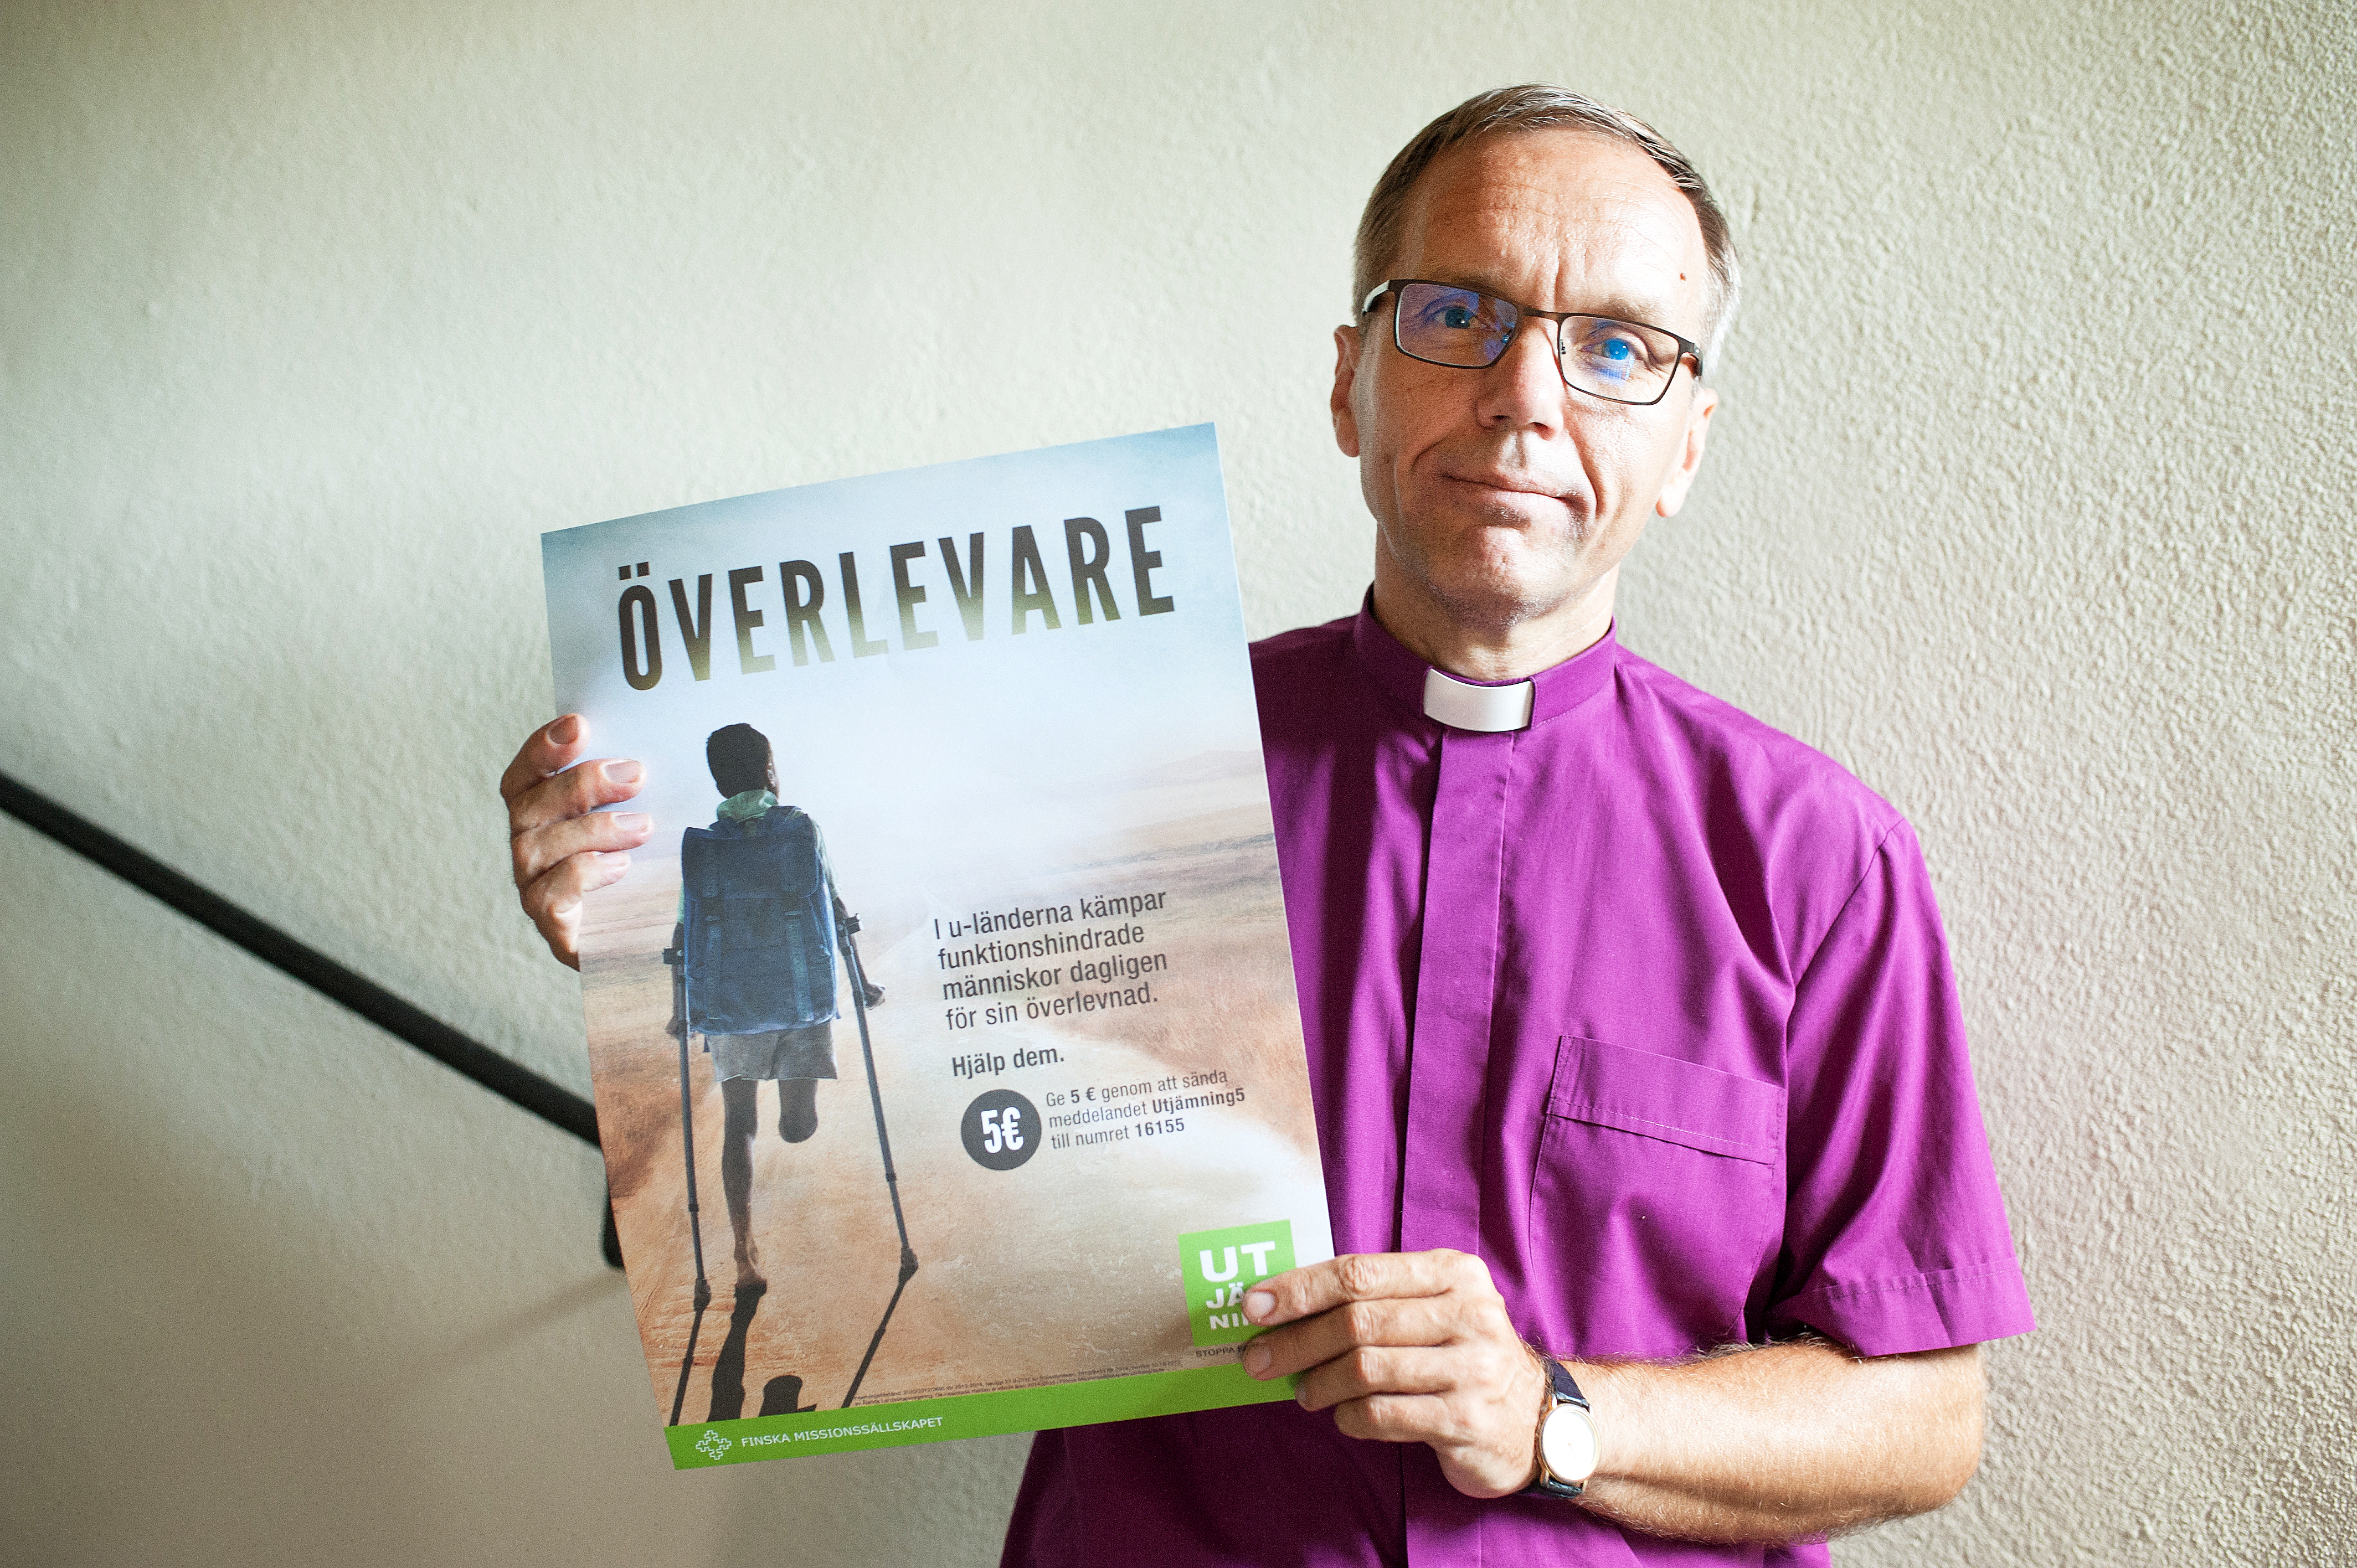 Biskop Björn Vikström är Utjämningens beskyddare. ”Vi möter Kristus i de svagaste”